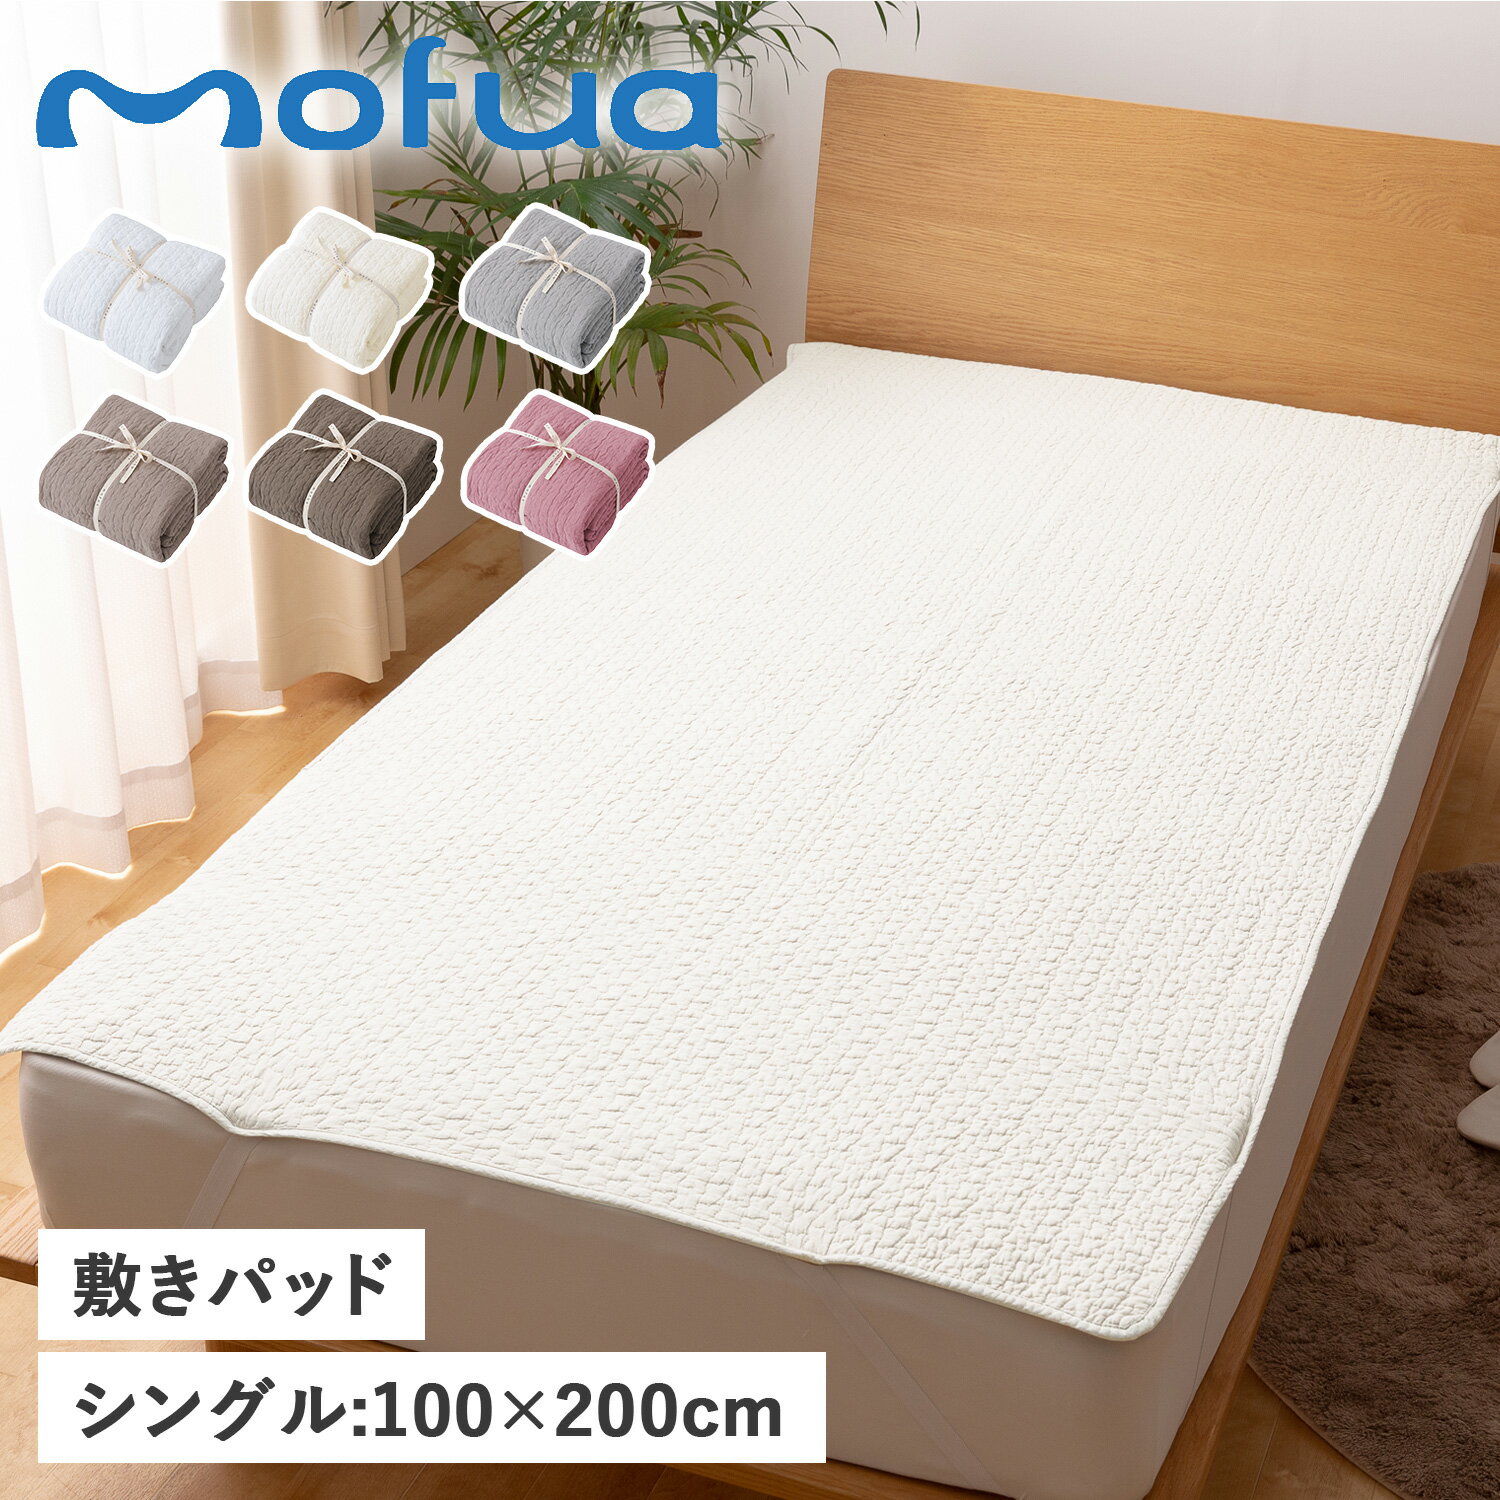 商品説明 【心地よい暮らしを実現する寝具ブランド mofua】 もこもこキルティング加工が施されたmofua(モフア)のイブル敷きパッド。コットン100%で、もこもこキルティング加工は可愛く、立体感のある肌触りが優しく心地よくなっています。夏はさらりと冬はほんのり暖かく一年中使える便利なアイテムです。洗濯ネットを使い、日陰で裏干しをすればお洗濯も可能です。ゴムバンドが付いているので、しっかり固定できずれにくく、敷布団やベッドマットレスにも使うことができます。低ホルムアルデヒドで安心品質。幼児にも安心して使えます。 ブランド名 / 商品名 mofua モフア / BED PAD 3624 カラー オフホワイト：OFF WHITE アイボリー：IVORY グレー：GRAY ベージュ：BEIGE ライトブラウン：LIGHT BROWN スモーキーピンク：SMOKY PINK 素材 / 仕様 表層：コットン 100% 中層：コットン 100%(200g/m2) 裏層：コットン 100% ゴムバンド付き 商品の注意点 ・イブルシリーズは環境にも配慮し、中綿の一部にリサイクルコットンを使用しています。そのため、稀に糸くず等が含まれ、透けて見える場合がありますが、品質には問題ありませんのでご了承ください。 ・タンブル(乾燥機)での乾燥は避けてください。 ・無蛍光洗剤を使用してください。 ・この製品は色落ちする恐れがあるので、選択は白いものと一緒にしないでください。 ・素材の特性上、選択後は放置せず、すぐに形を整えて干してください。 生産国 CHINA サイズ 100cm×200cm(キルティング製 許容範囲5%-3%) こちらの商品は、メーカー公式の採寸基準で計測しています。 ご購入前に必ずお読みください サイズ・仕様について 平置きして採寸したサイズになります。商品によっては若干の誤差が生じてしまう場合がございます。また、商品やブランド等によりサイズが異なります。（単位はcmになります。） カラーについて 個体ごとに若干の誤差がある場合がございます。商品の画像は、できるだけ商品に近いカラーにて、掲載をしております。お客様のモニターの設定により、色味に違いが発生してしまう場合もございます。あらかじめご了承ください。 予約商品の納期発送目安について 予約商品の納期発送目安は、以下の通りになります。 上旬：1日-10日頃発送予定 中旬：11日-20日頃発送予定 下旬：21日-末日頃発送予定 ※目安になりますので、日程が多少前後する場合があります。 類似商品はこちらモフア mofua 敷きパッド ベッドパッド 5,480円モフア mofua 敷きパッド ベッドパッド 7,480円モフア mofua 敷きパッド ベッドパッド 4,780円モフア mofua 敷きパッド ワイドキング 5,500円モフア mofua 敷パッド キングサイズ 超5,170円モフア mofua シーツ ワイドキング 敷き4,990円モフア mofua 敷パッド クイーンサイズ 4,480円モフア mofua 敷パッド ダブルサイズ 超3,990円モフア mofua ベビーマット マットレス 7,980円新着商品はこちら2024/5/19EsmeraldA エスメラルダ 枕 呼吸する9,875円2024/5/18Timberland ブーツ メンズ ティンバ19,800円2024/5/18CAMPER カンペール ブーツ 靴 サイドゴ25,400円再販商品はこちら2024/5/19イズイット IS/IT リュック バッグ バッ34,100円2024/5/19RIVER LIGHT リバーライト 極 フラ9,130円2024/5/19RIVER LIGHT リバーライト 極 フラ10,230円2024/05/20 更新 類似商品はこちらモフア mofua 敷きパッド ベッドパッド 5,480円モフア mofua 敷きパッド ベッドパッド 7,480円モフア mofua 敷きパッド ベッドパッド 4,780円新着商品はこちら2024/5/19EsmeraldA エスメラルダ 枕 呼吸する9,875円2024/5/18Timberland ブーツ メンズ ティンバ19,800円2024/5/18CAMPER カンペール ブーツ 靴 サイドゴ25,400円再販商品はこちら2024/5/19イズイット IS/IT リュック バッグ バッ34,100円2024/5/19RIVER LIGHT リバーライト 極 フラ9,130円2024/5/19RIVER LIGHT リバーライト 極 フラ10,230円